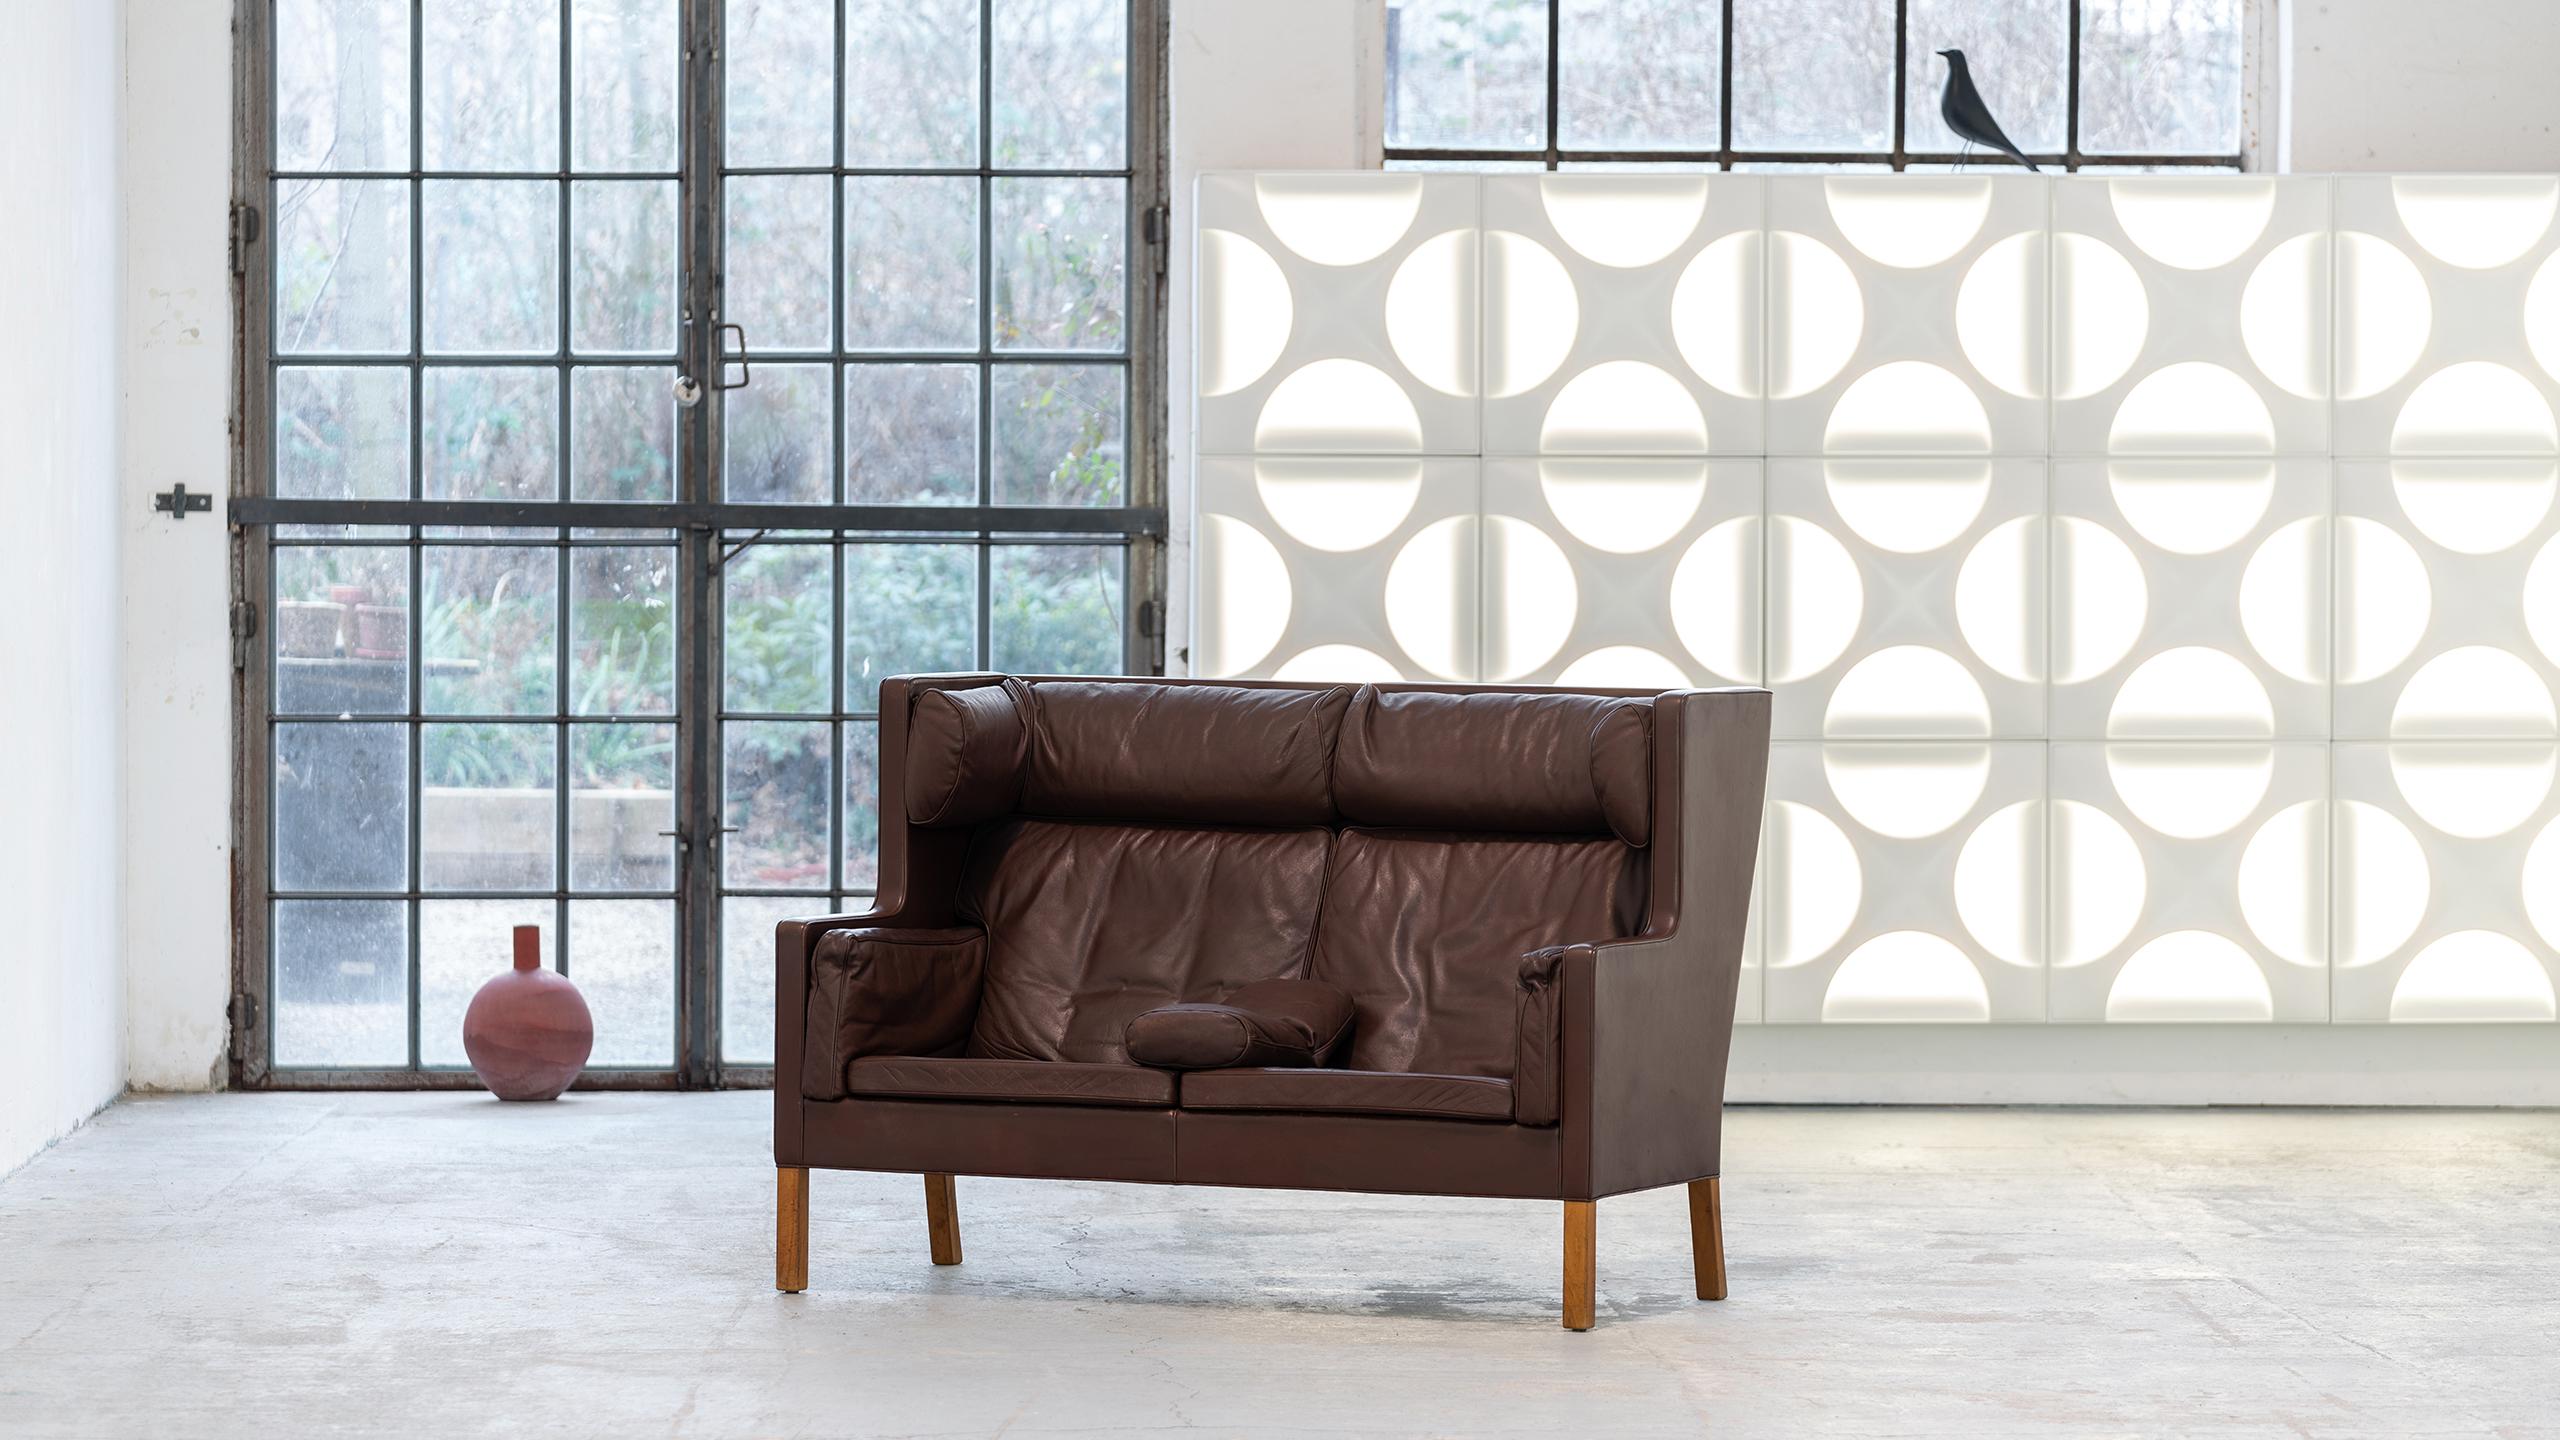 Das Couch-Sofa „Haube Sofa“, entworfen 1971 für Fredericia, Dänemark

Brge Mogensen entwarf das luxuriöse Coup Sofa mit der unverwechselbaren hohen Rückenlehne von 106 cm, besonders für gemütliche, bequeme Abende am Kamin. Hier mit einem weiteren